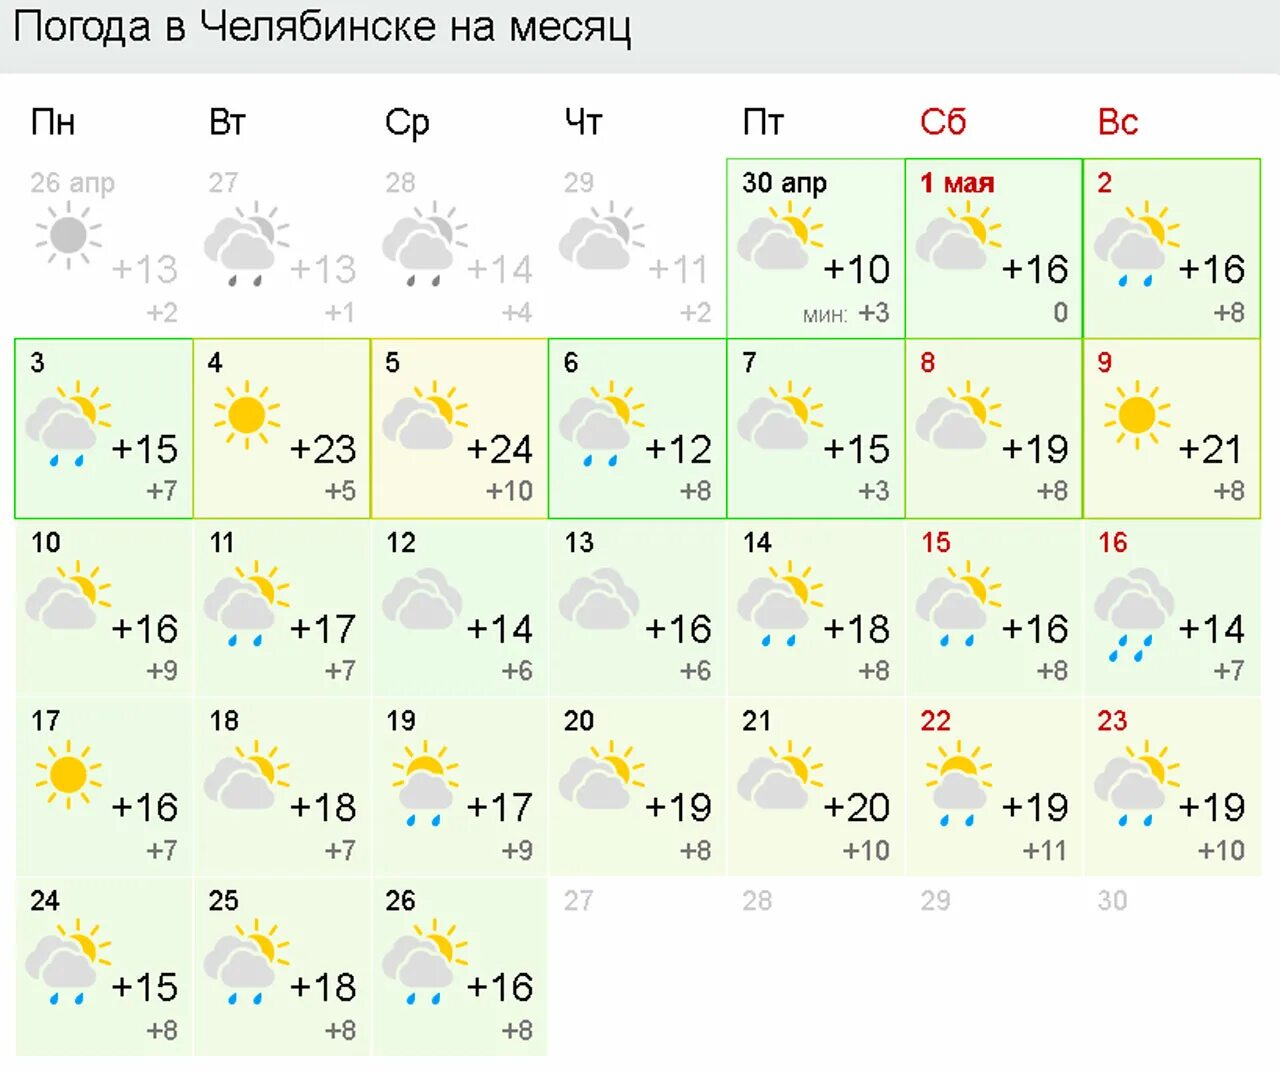 Точный прогноз погоды в магнитогорске на месяц. Погода в Магнитогорске. Погода в Челябинске на 10 дней. Май Челябинск. Прогноз погоды в Магнитогорске.